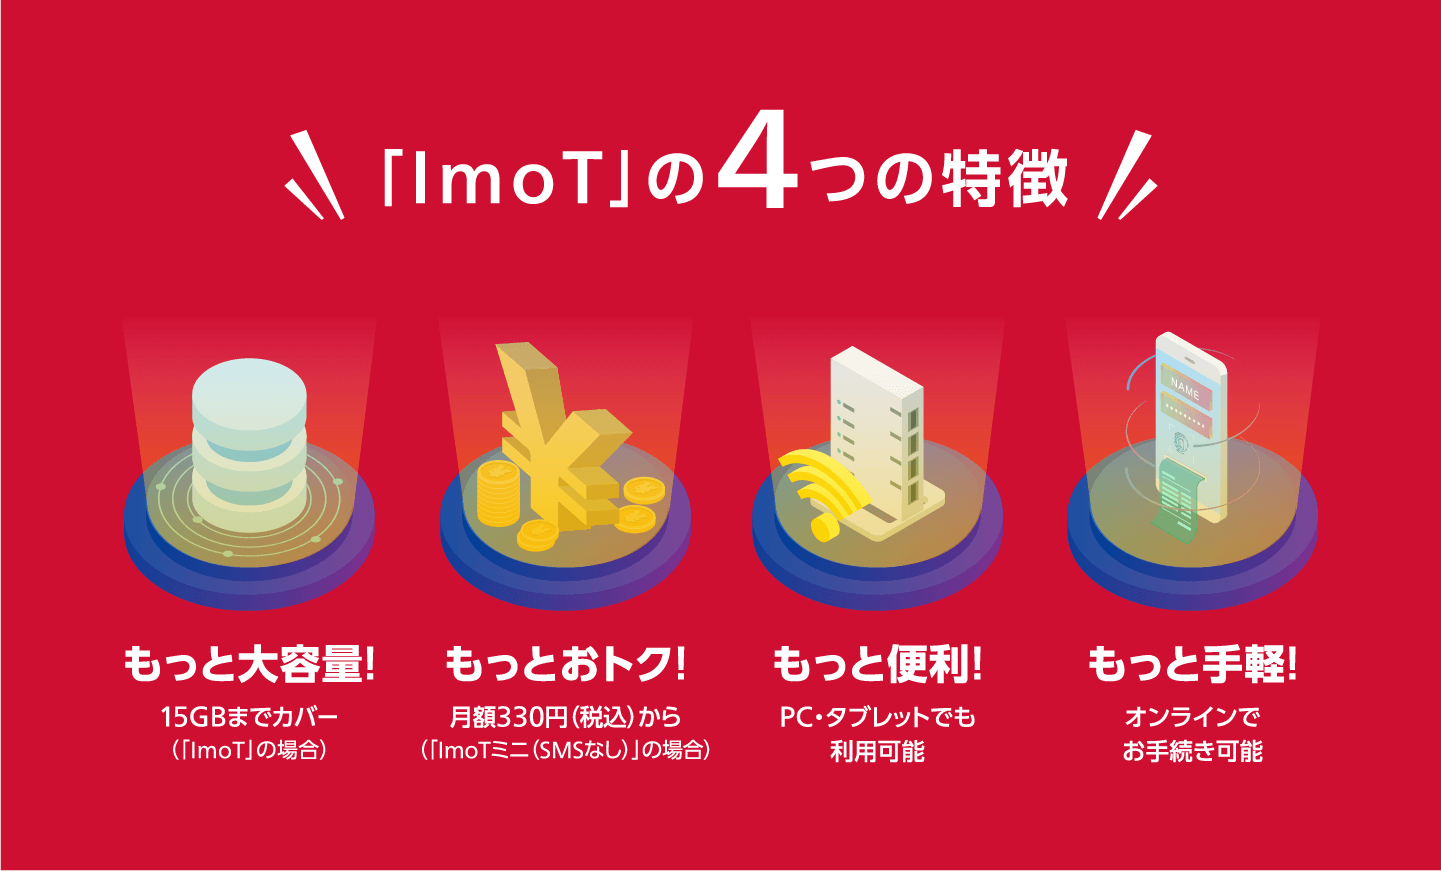 「ImoT™」の4つの特徴